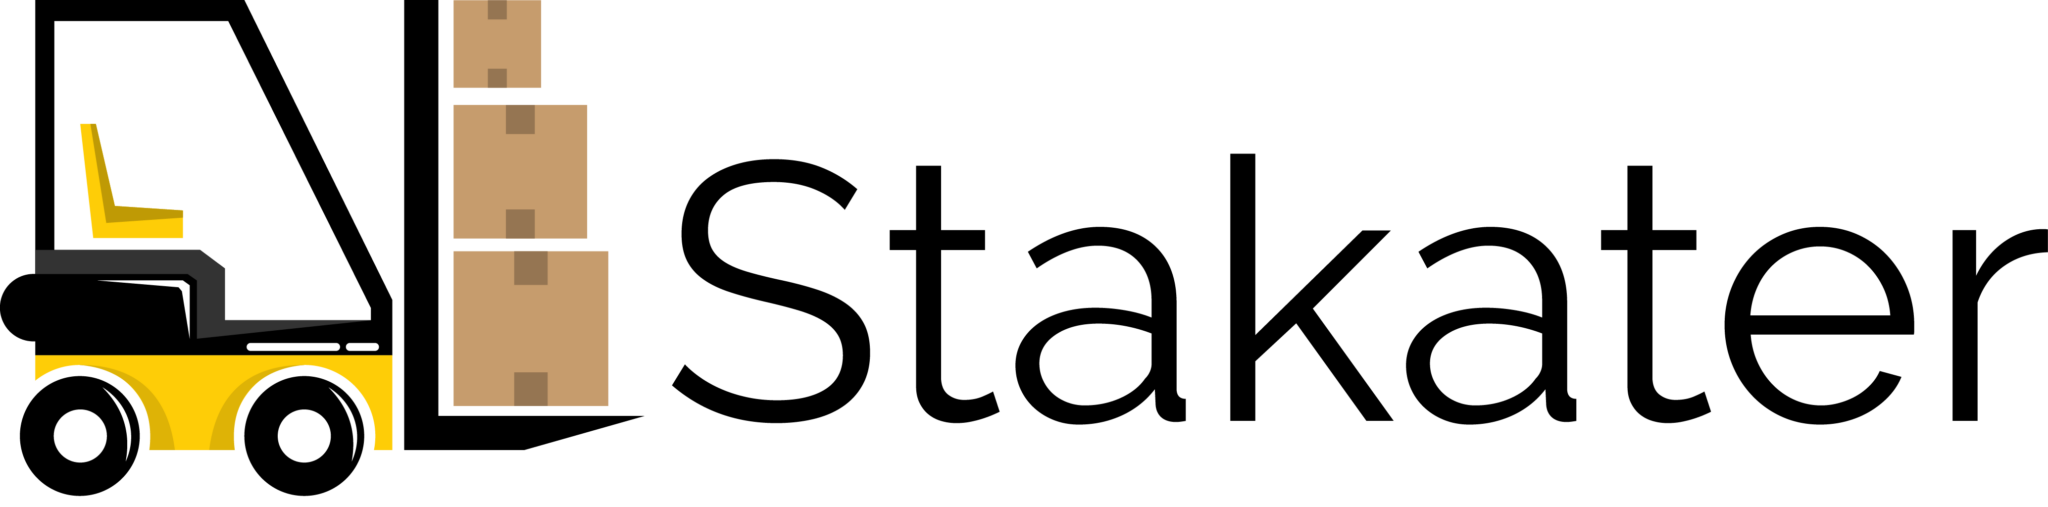 stakater logo